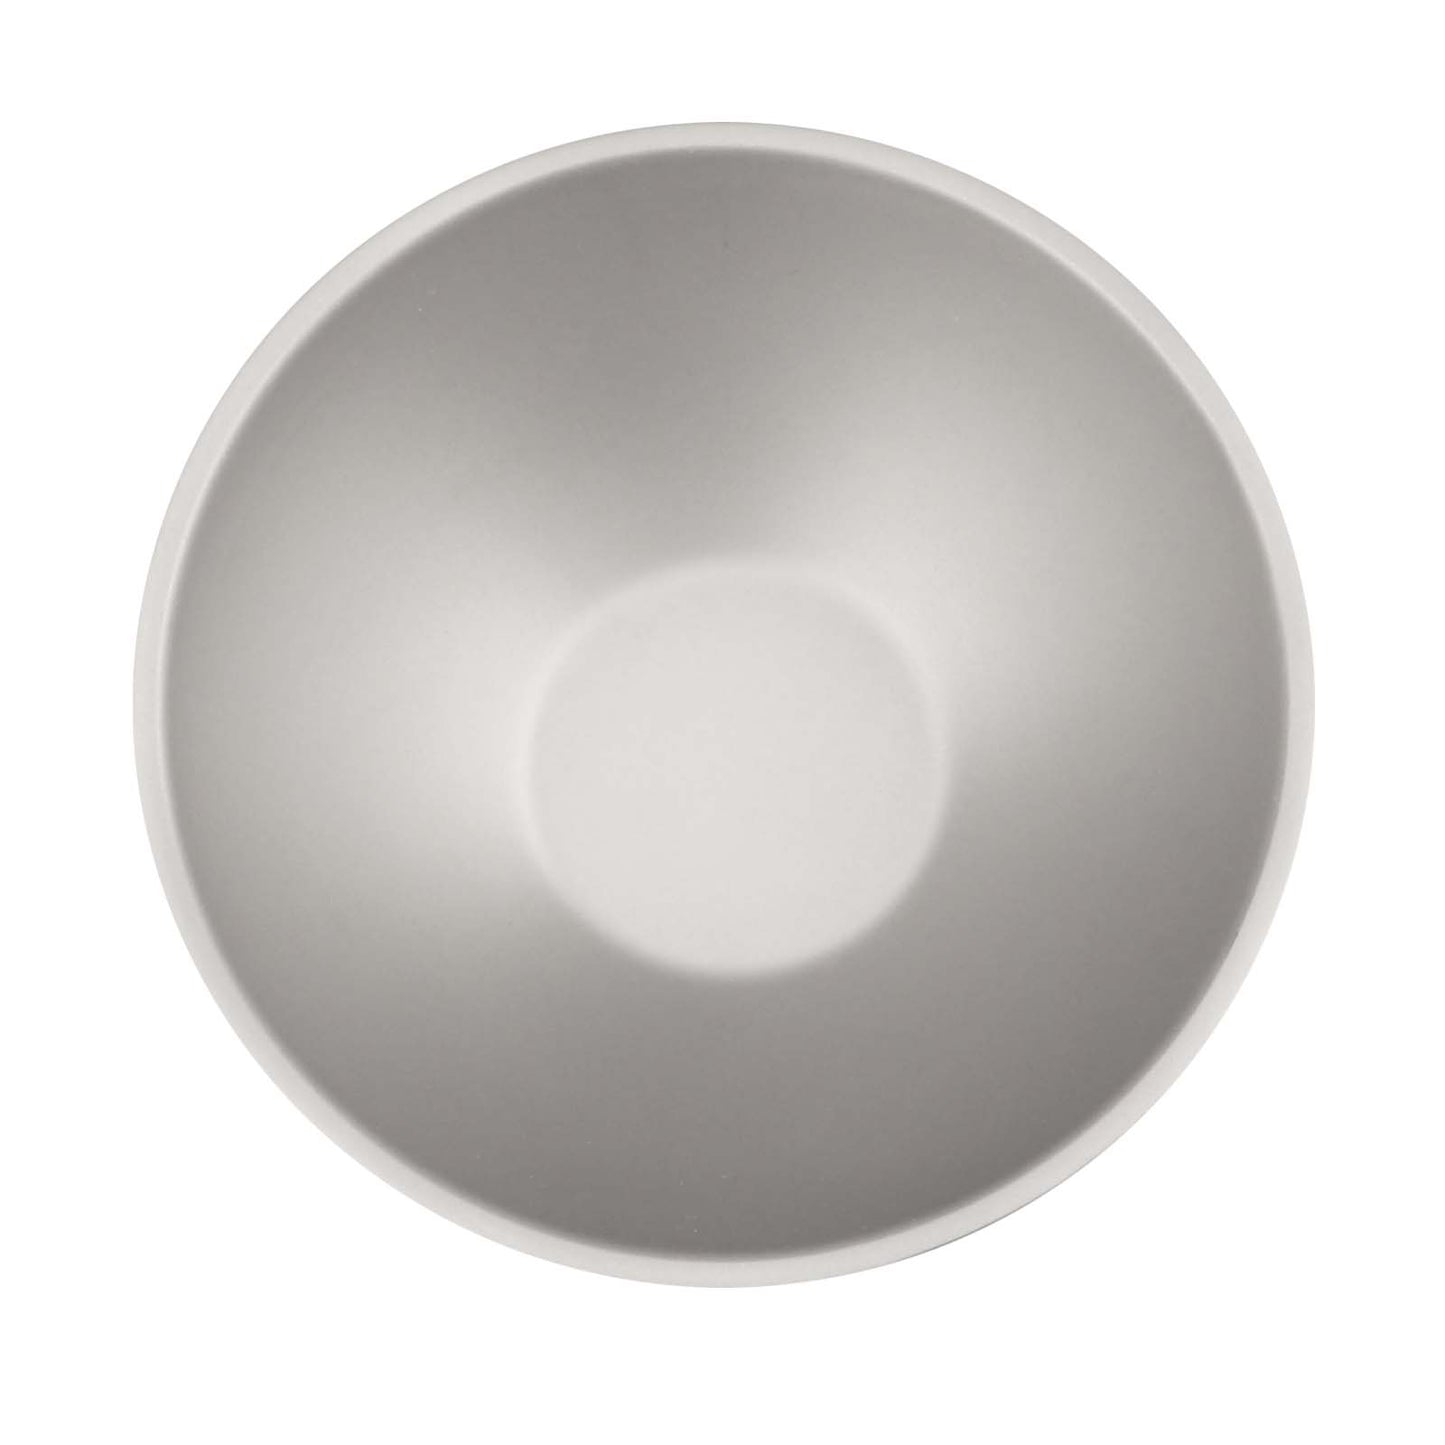 
                  
                    SilverAnt Outdoors Titanium Double-Wall Bowl 250ml/8.5fl oz
                  
                